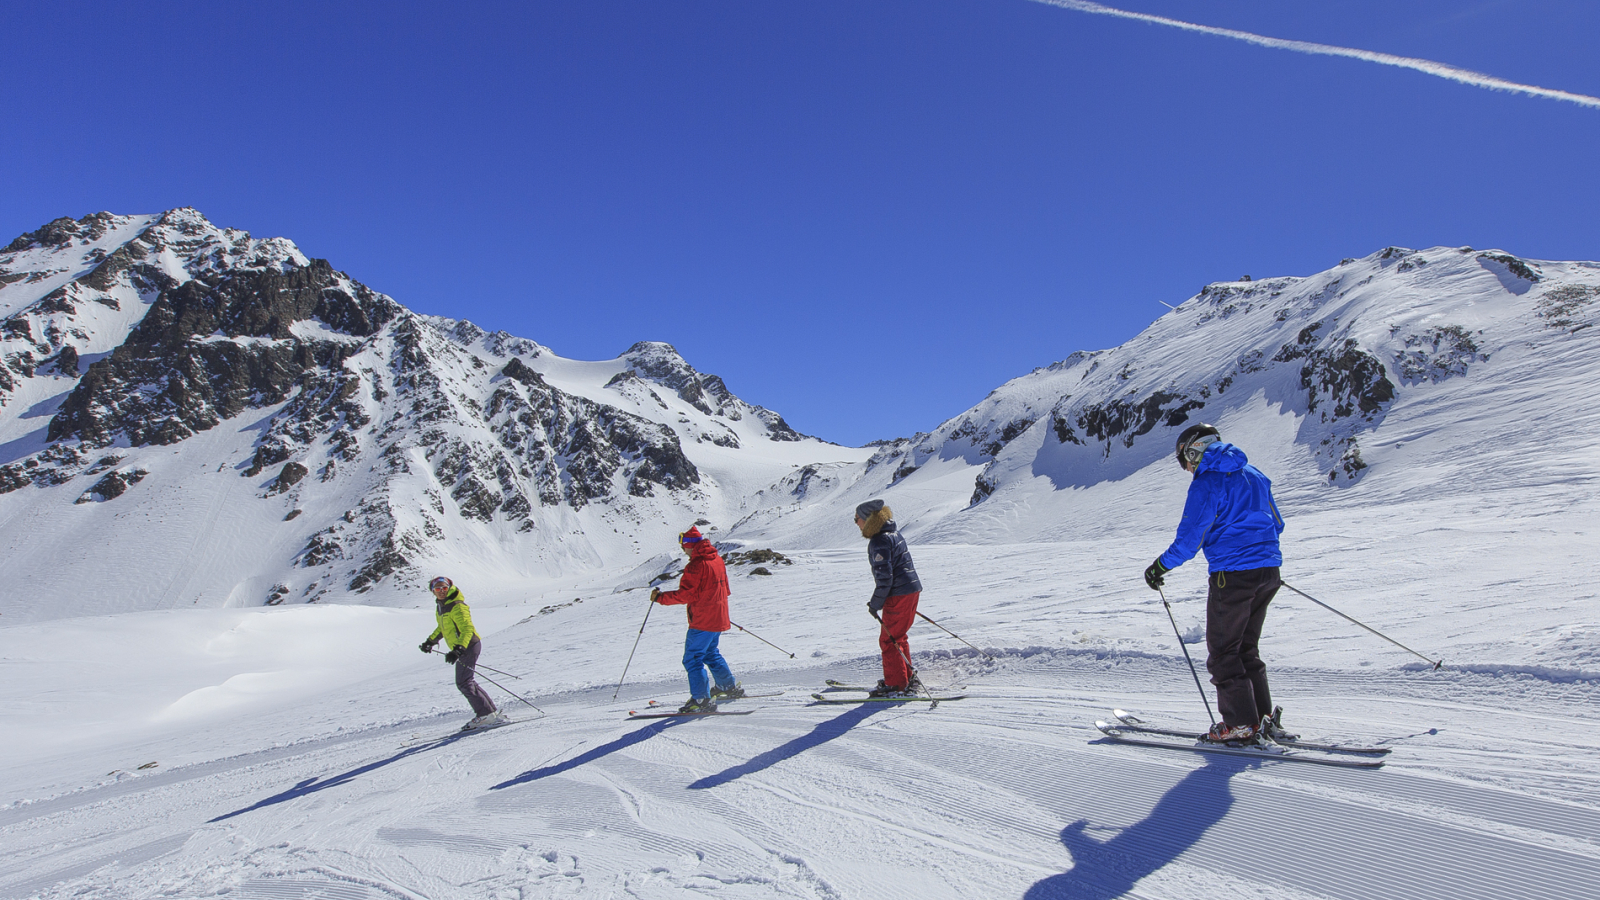 Prosneige Ski school - Meribel - adult group lesson